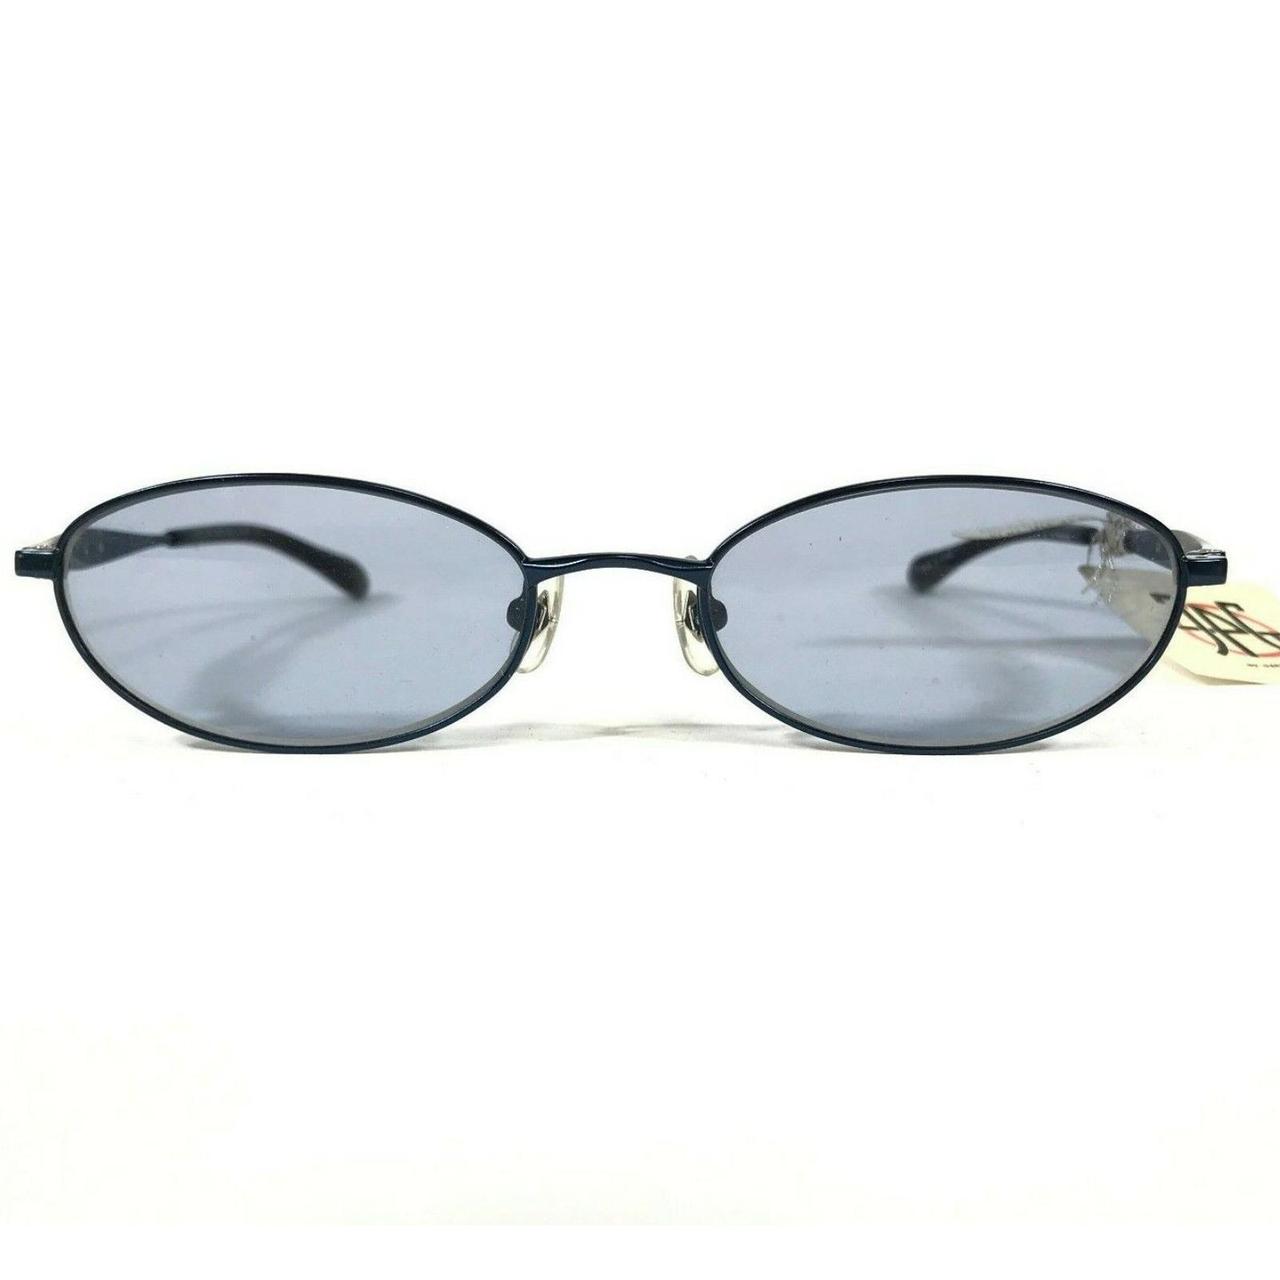 Product Image 2 - Vintage JPG Sunglasses 58-0066 Blue